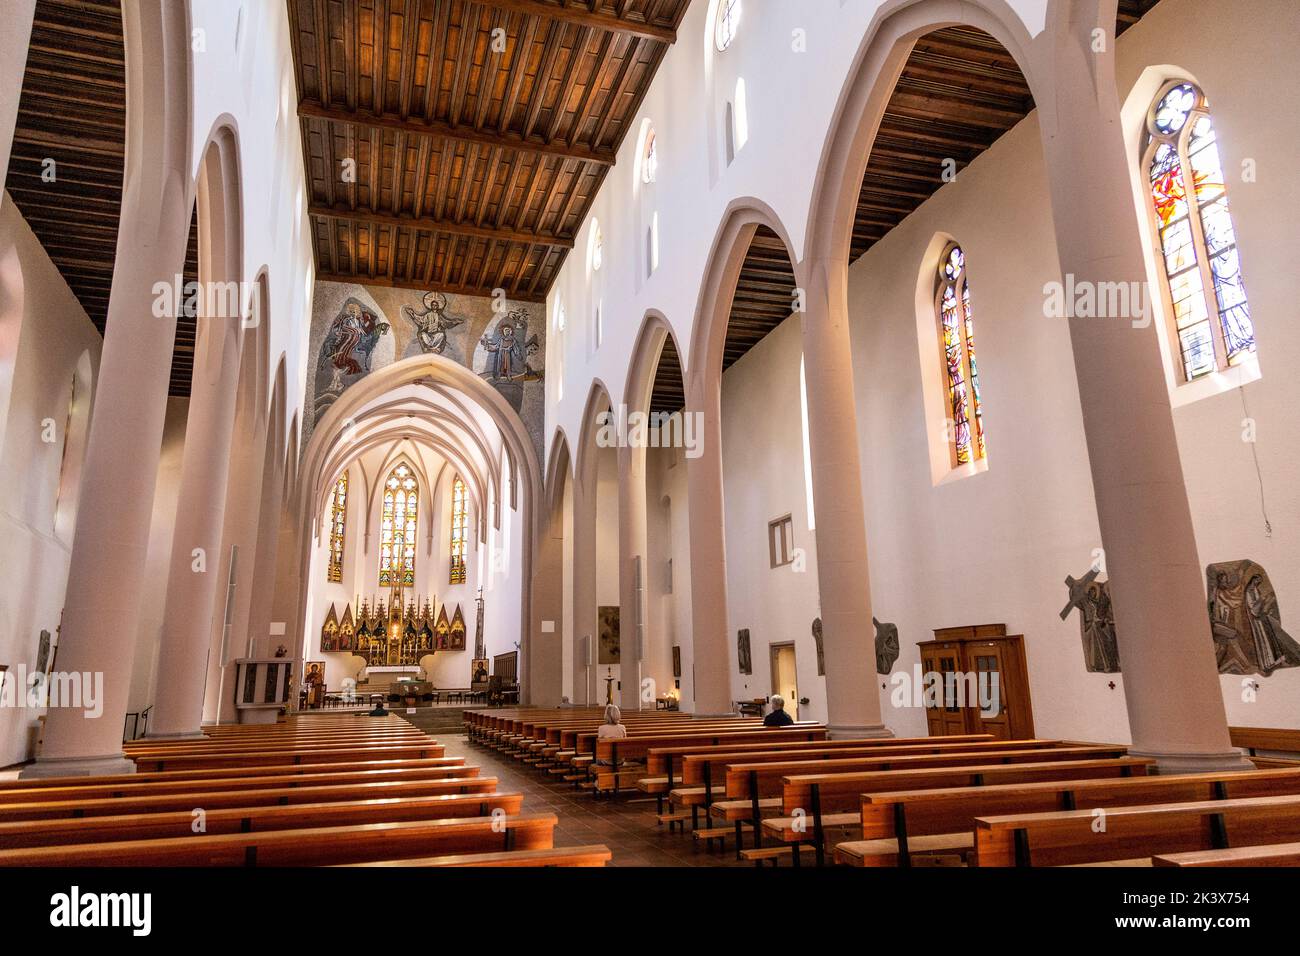 Interior of St. Martinskirche (St. Martin’s Church), Freiburg im Breisgau, Germany Stock Photo